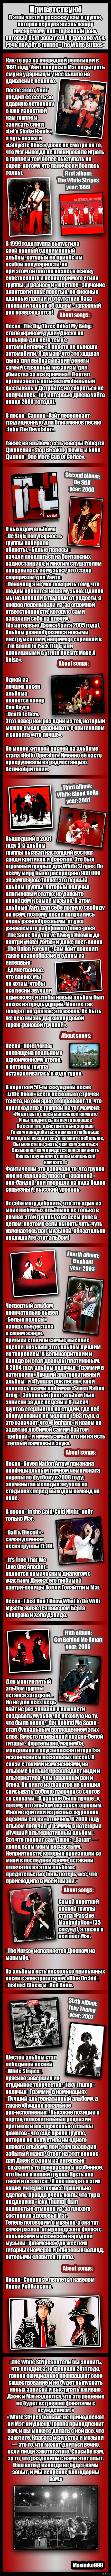     ( : The White Stripes)   <a href="http://pikabu.ru/story/biografiya_dzheka_uayta_chast_pervaya_nachalo_2466708">http://pikabu.ru/story/_2466708</a>